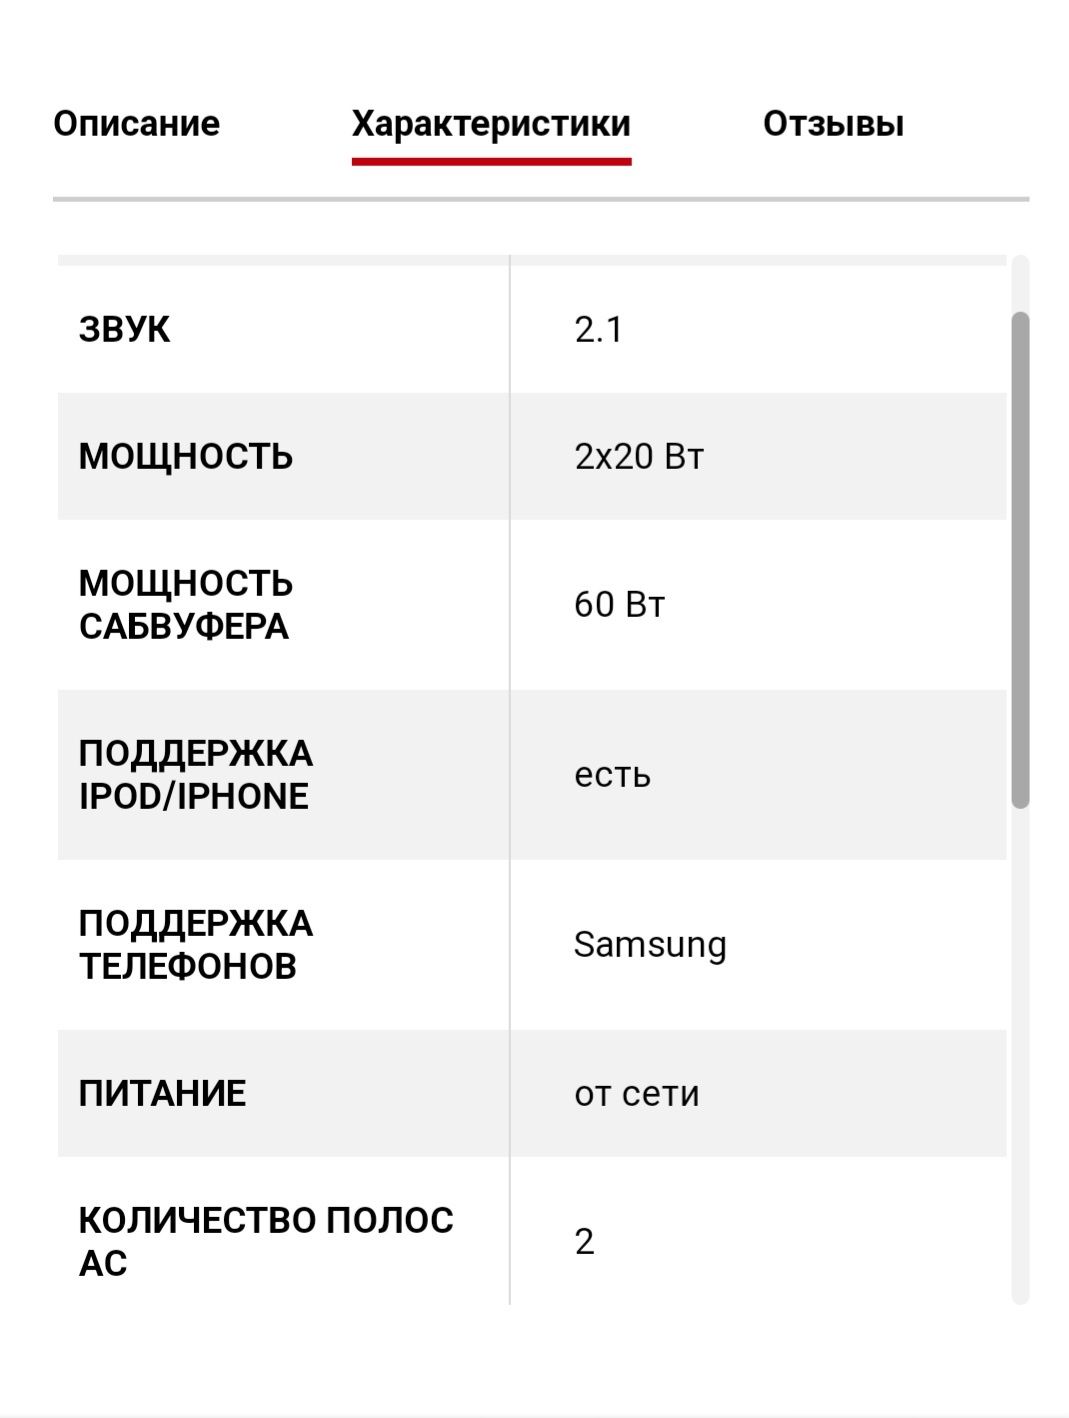 Стильная аудиосистема с докстанцией Samsung DA-E750